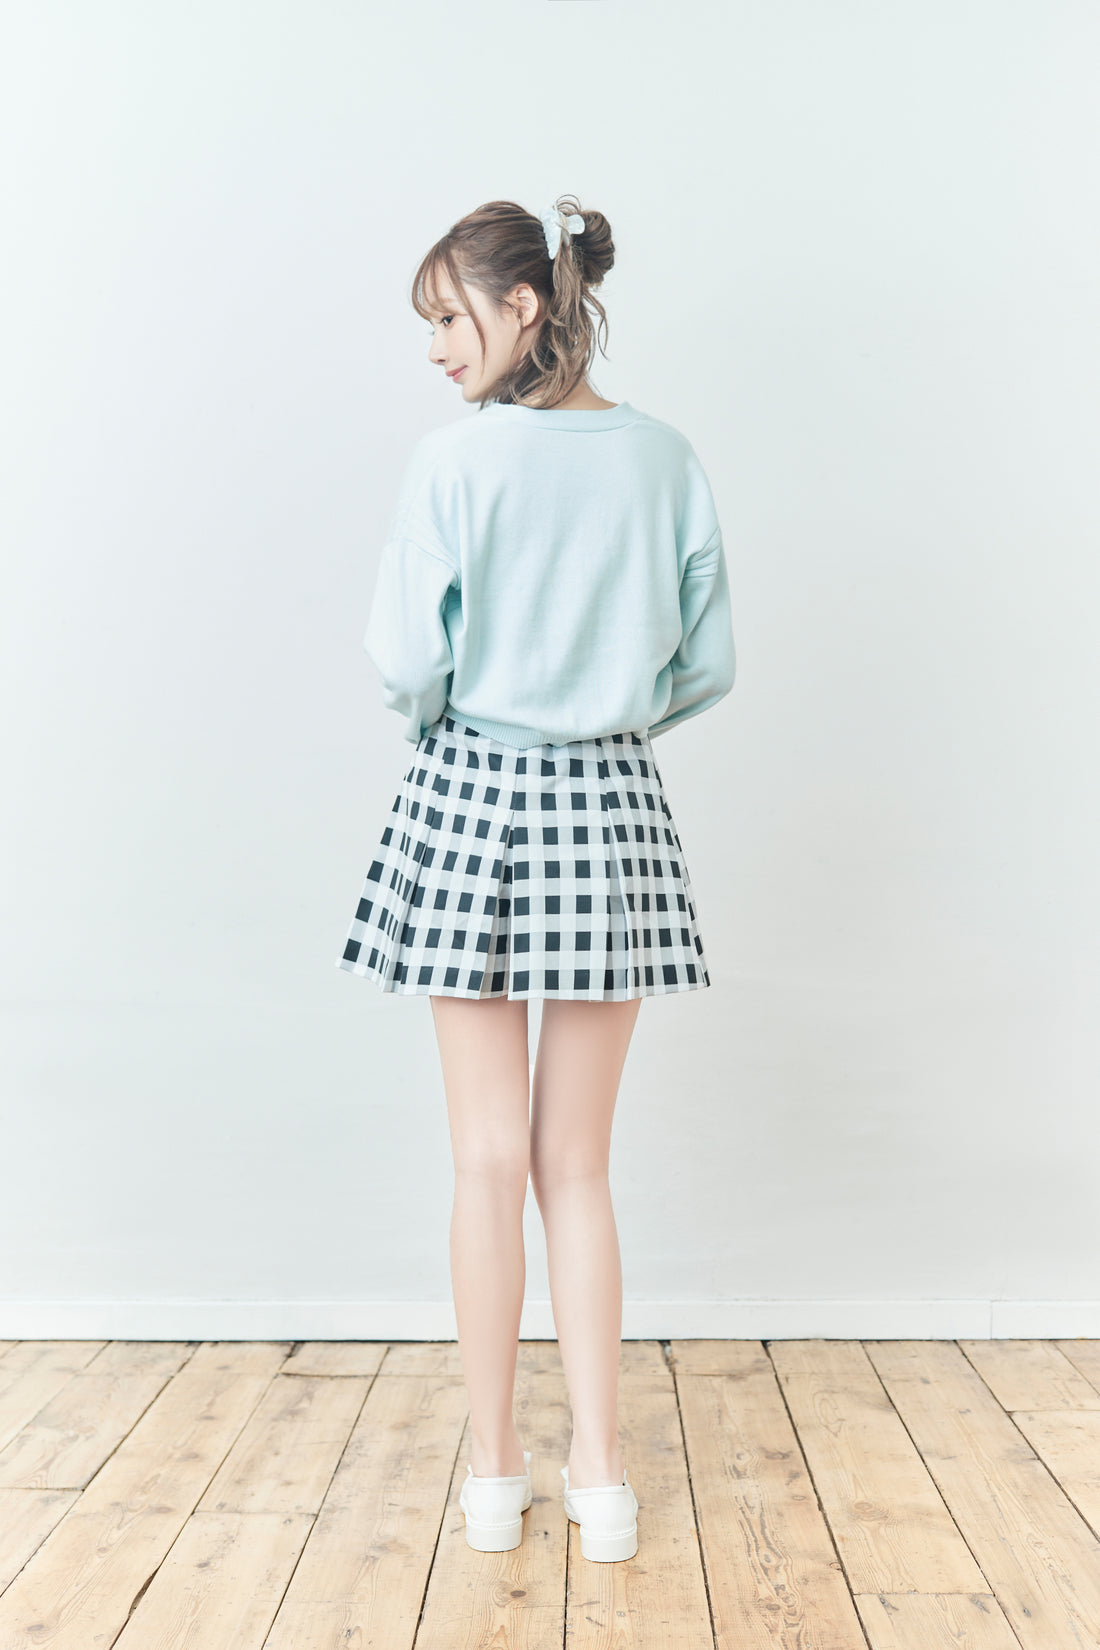 Box Pleats Mini-Skirt